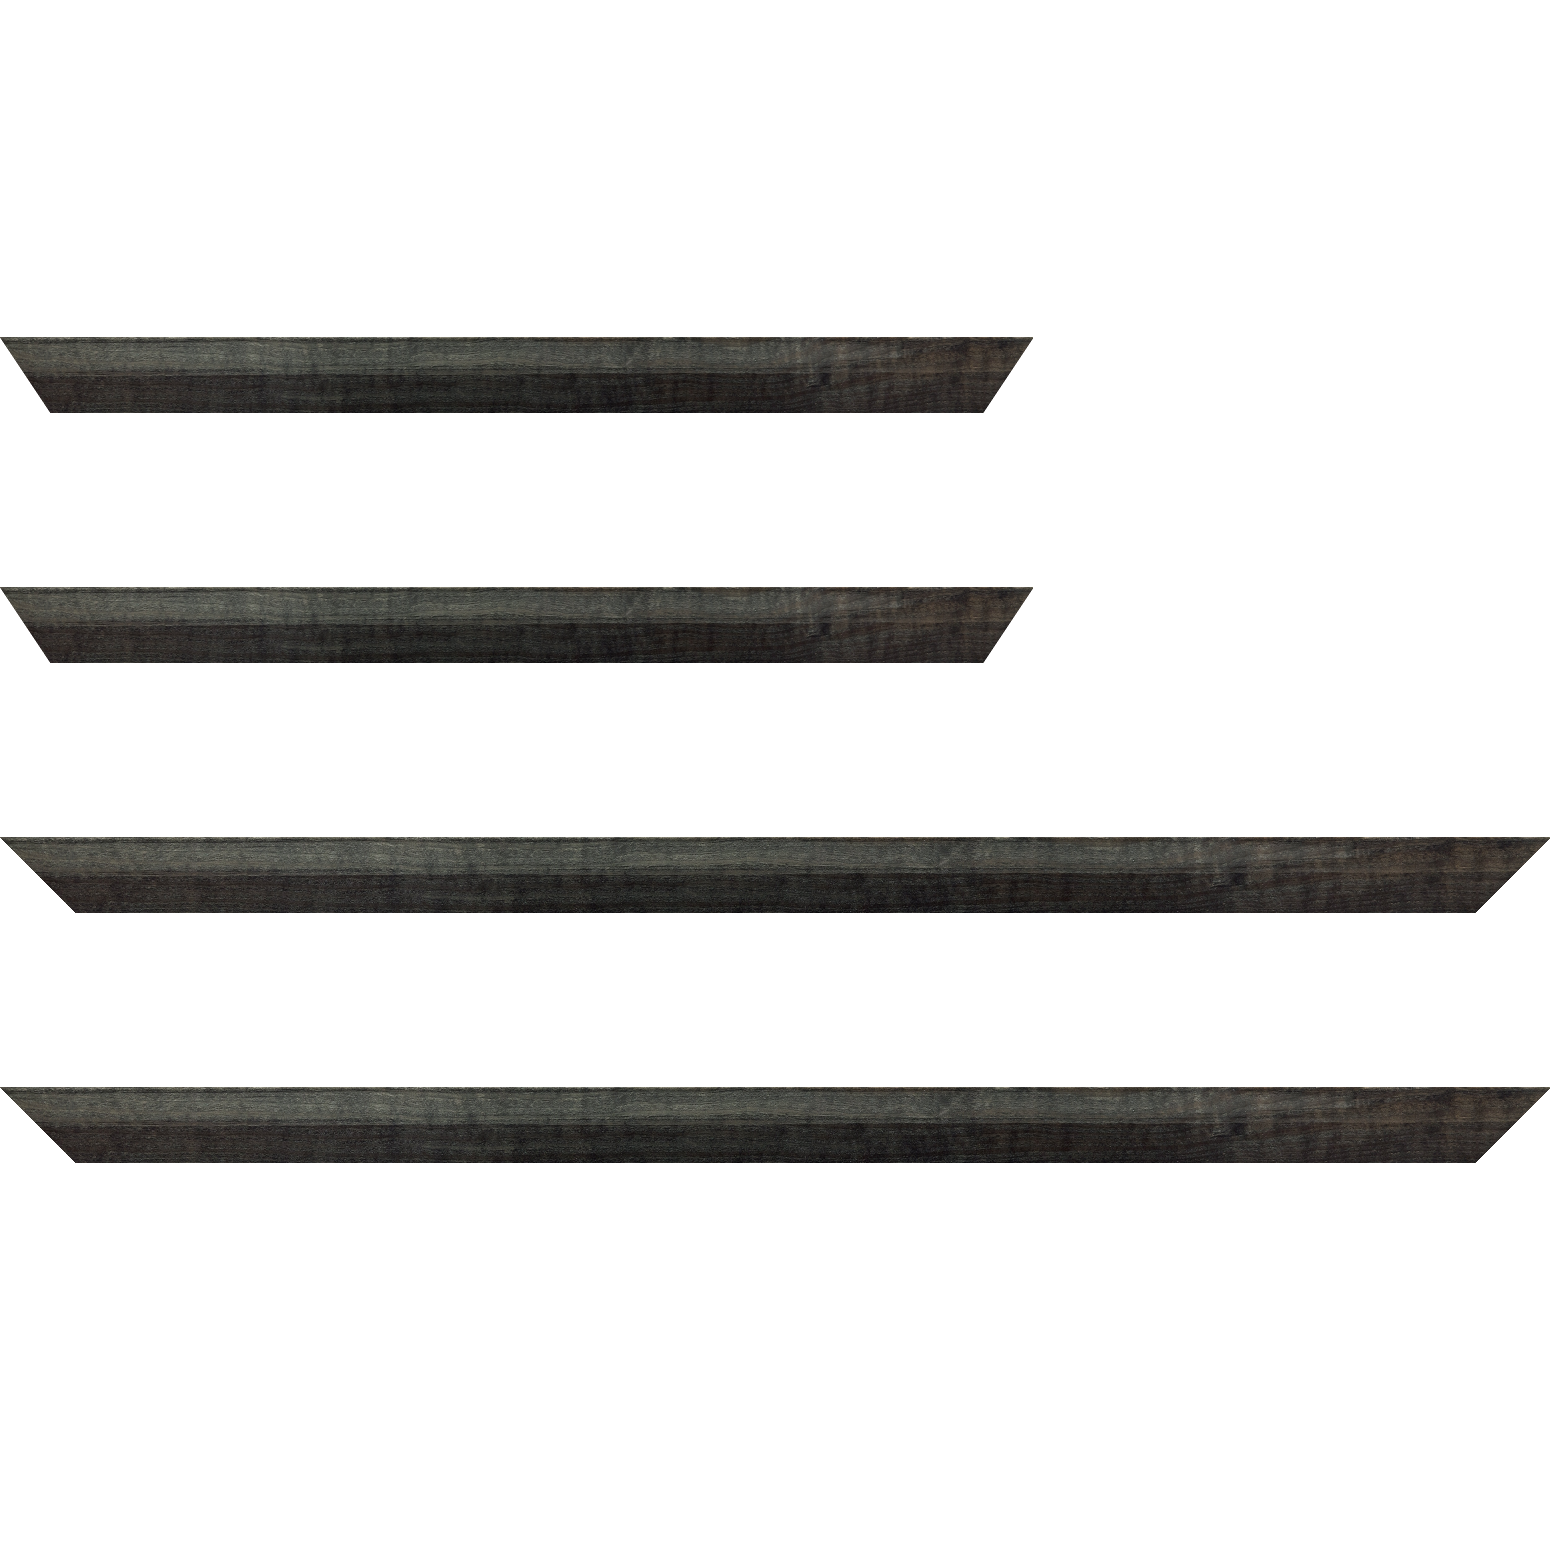 Baguette bois profil arrondi en pente plongeant largeur 2.4cm couleur  gris foncé anthracite finition vernis brillant,veine du bois  apparent (pin) , - 24x30